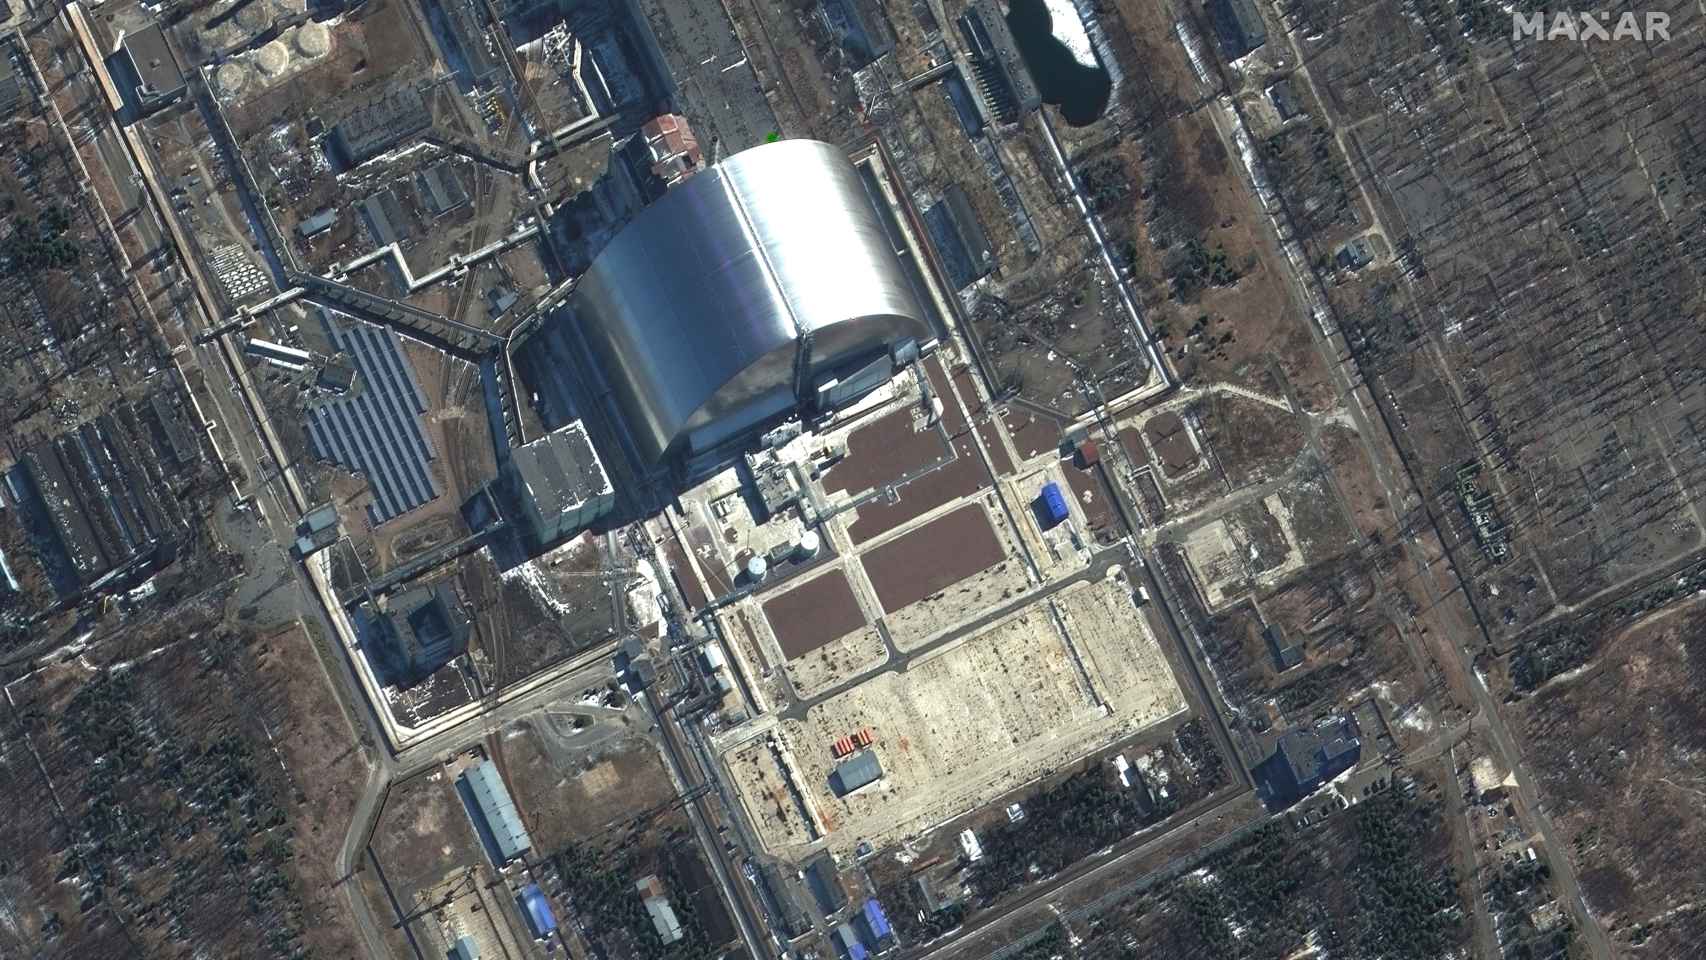 Una imagen satelital muestra una vista más cercana del sarcófago en Chernóbil, en medio de la invasión rusa de Ucrania, Ucrania, 10 de marzo de 2022. Imagen satelital ©2022